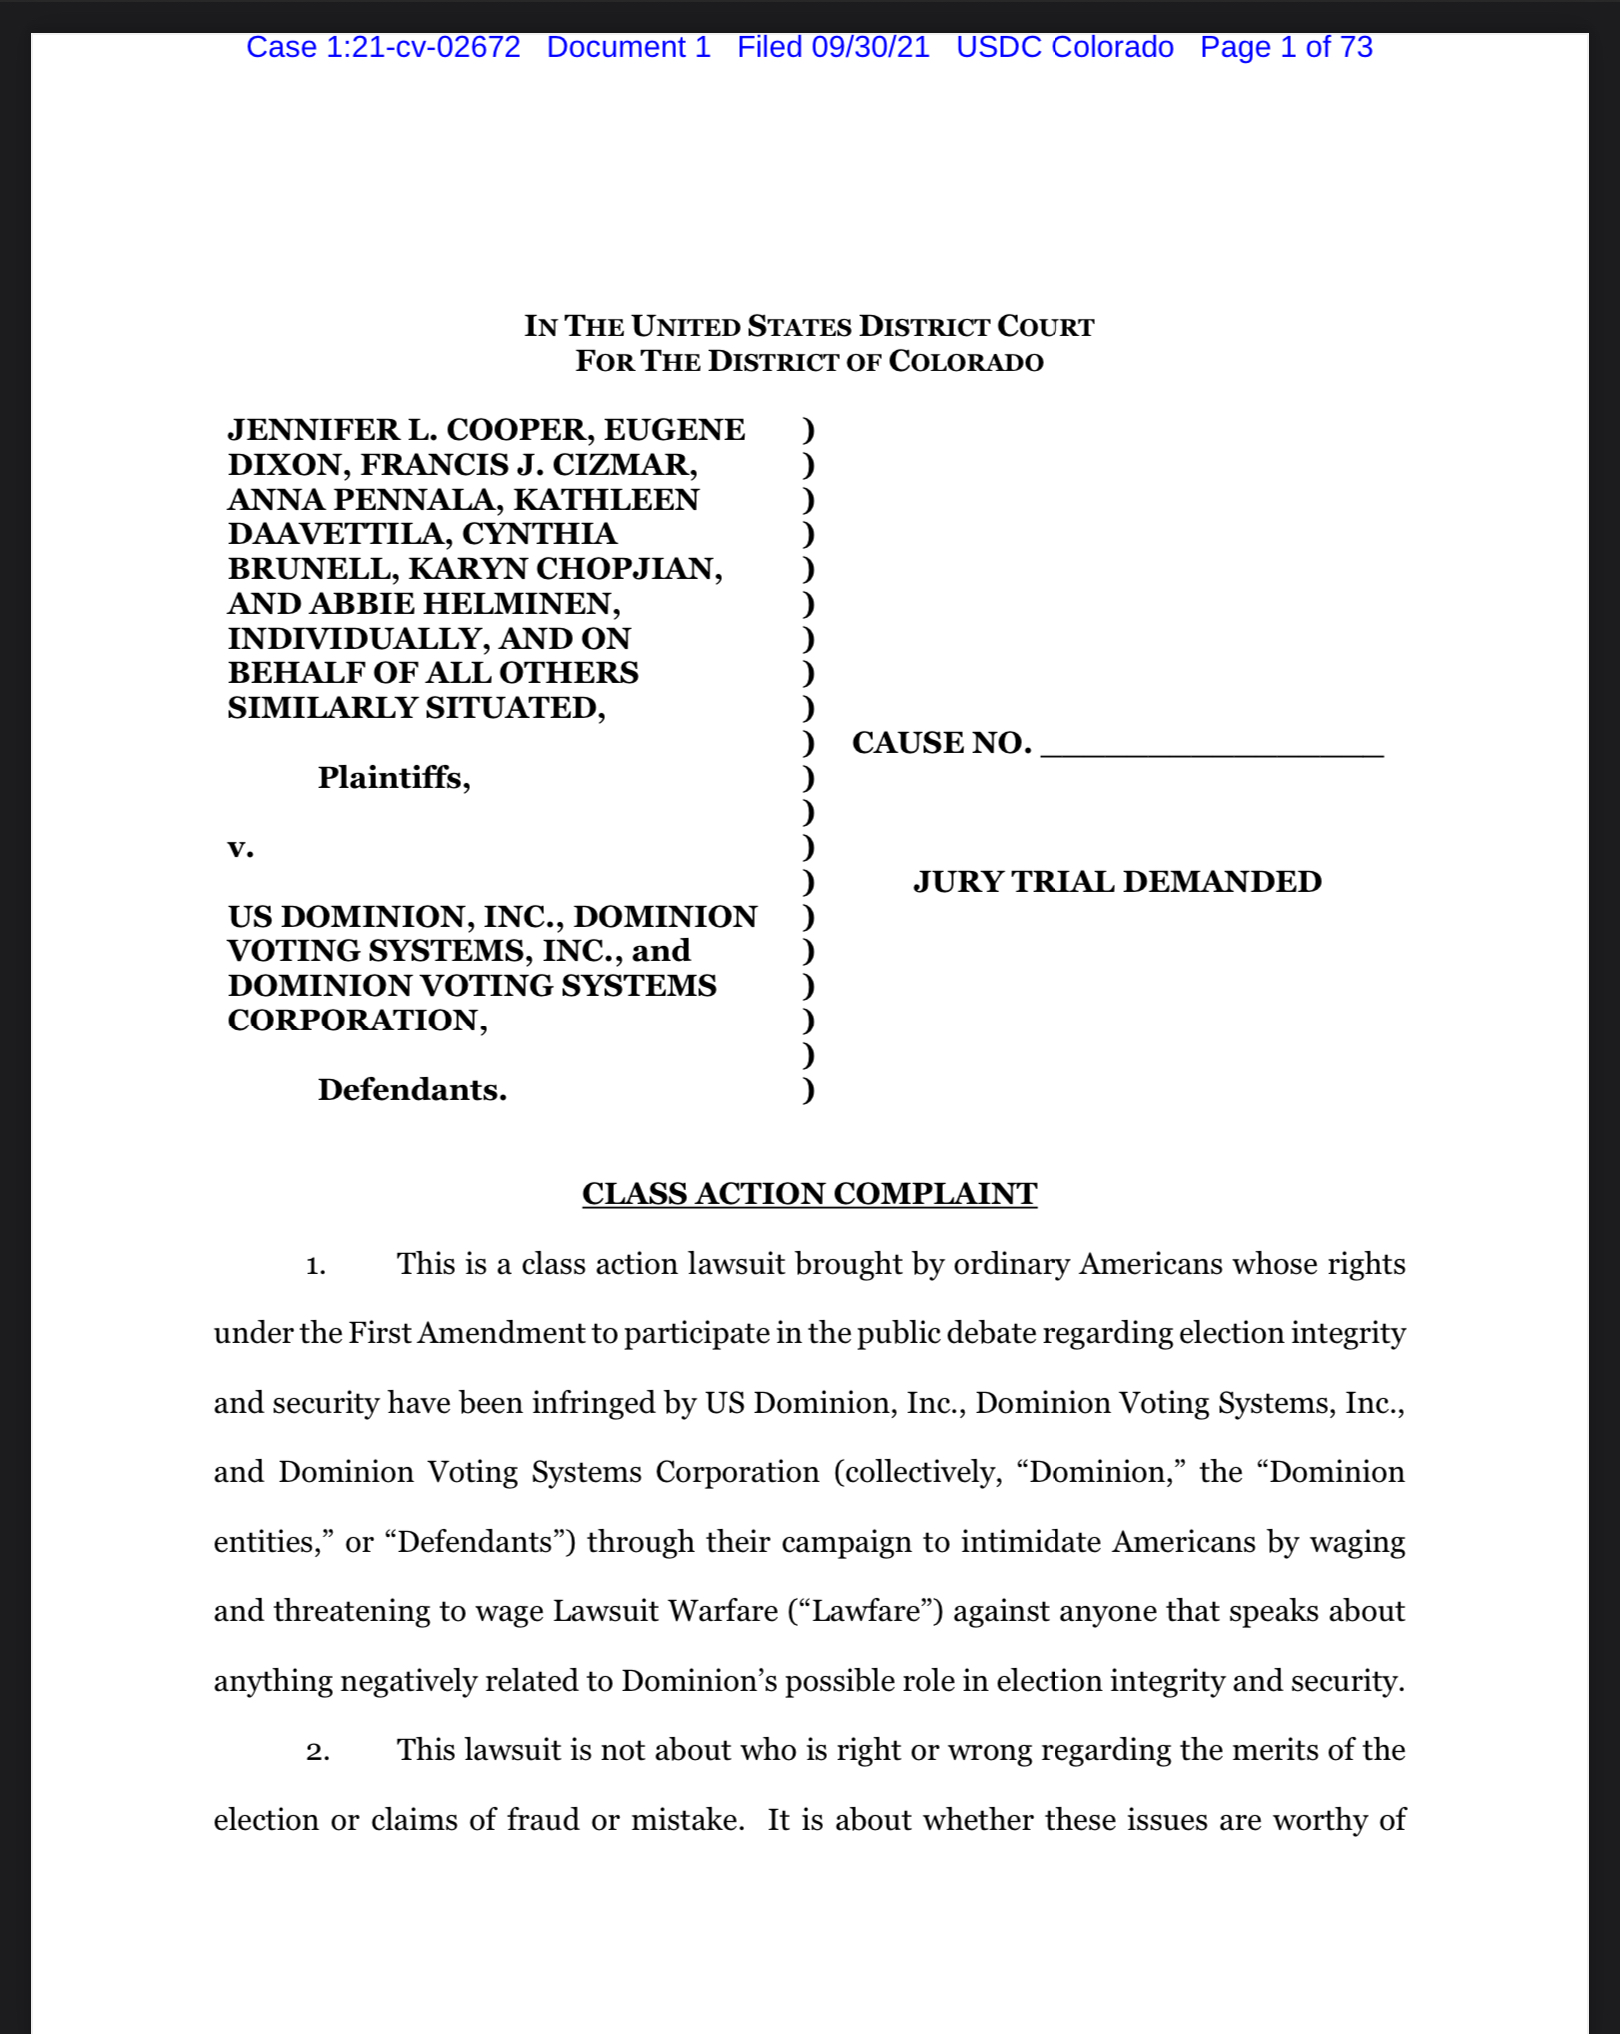 class action lawsuit against US Dominion Inc